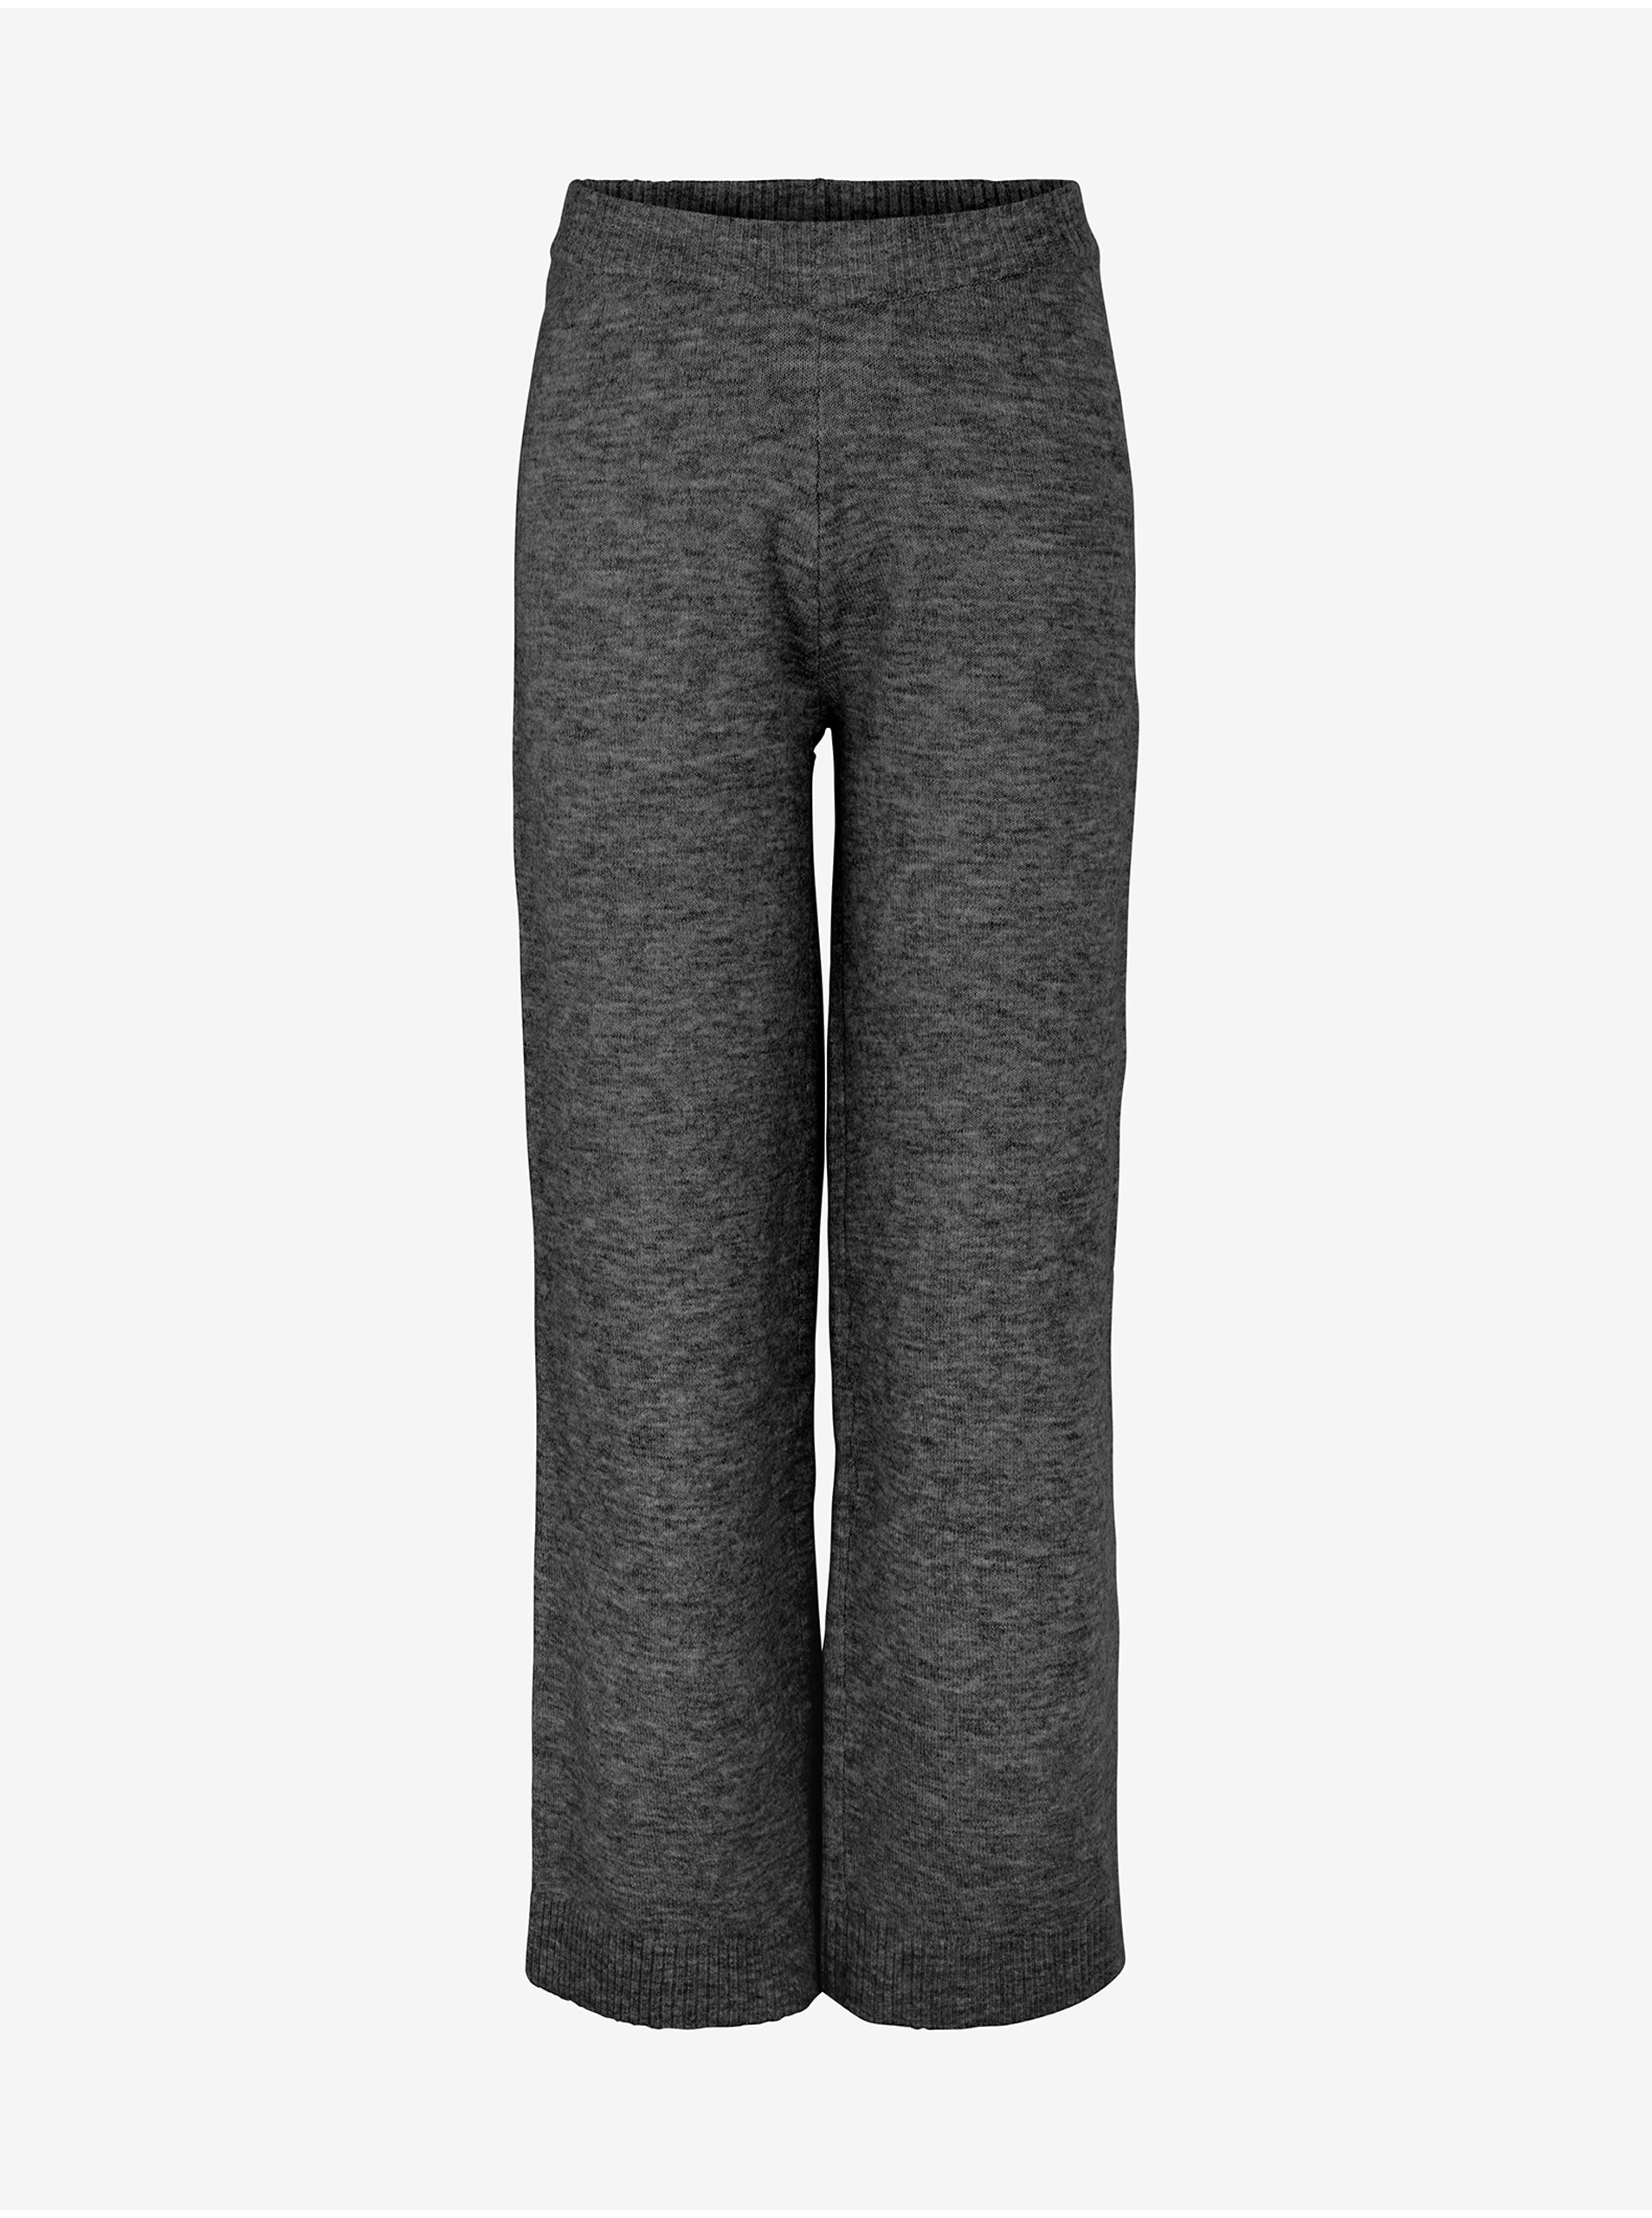 E-shop Tmavě šedé žíhané široké kalhoty Pieces Cindy